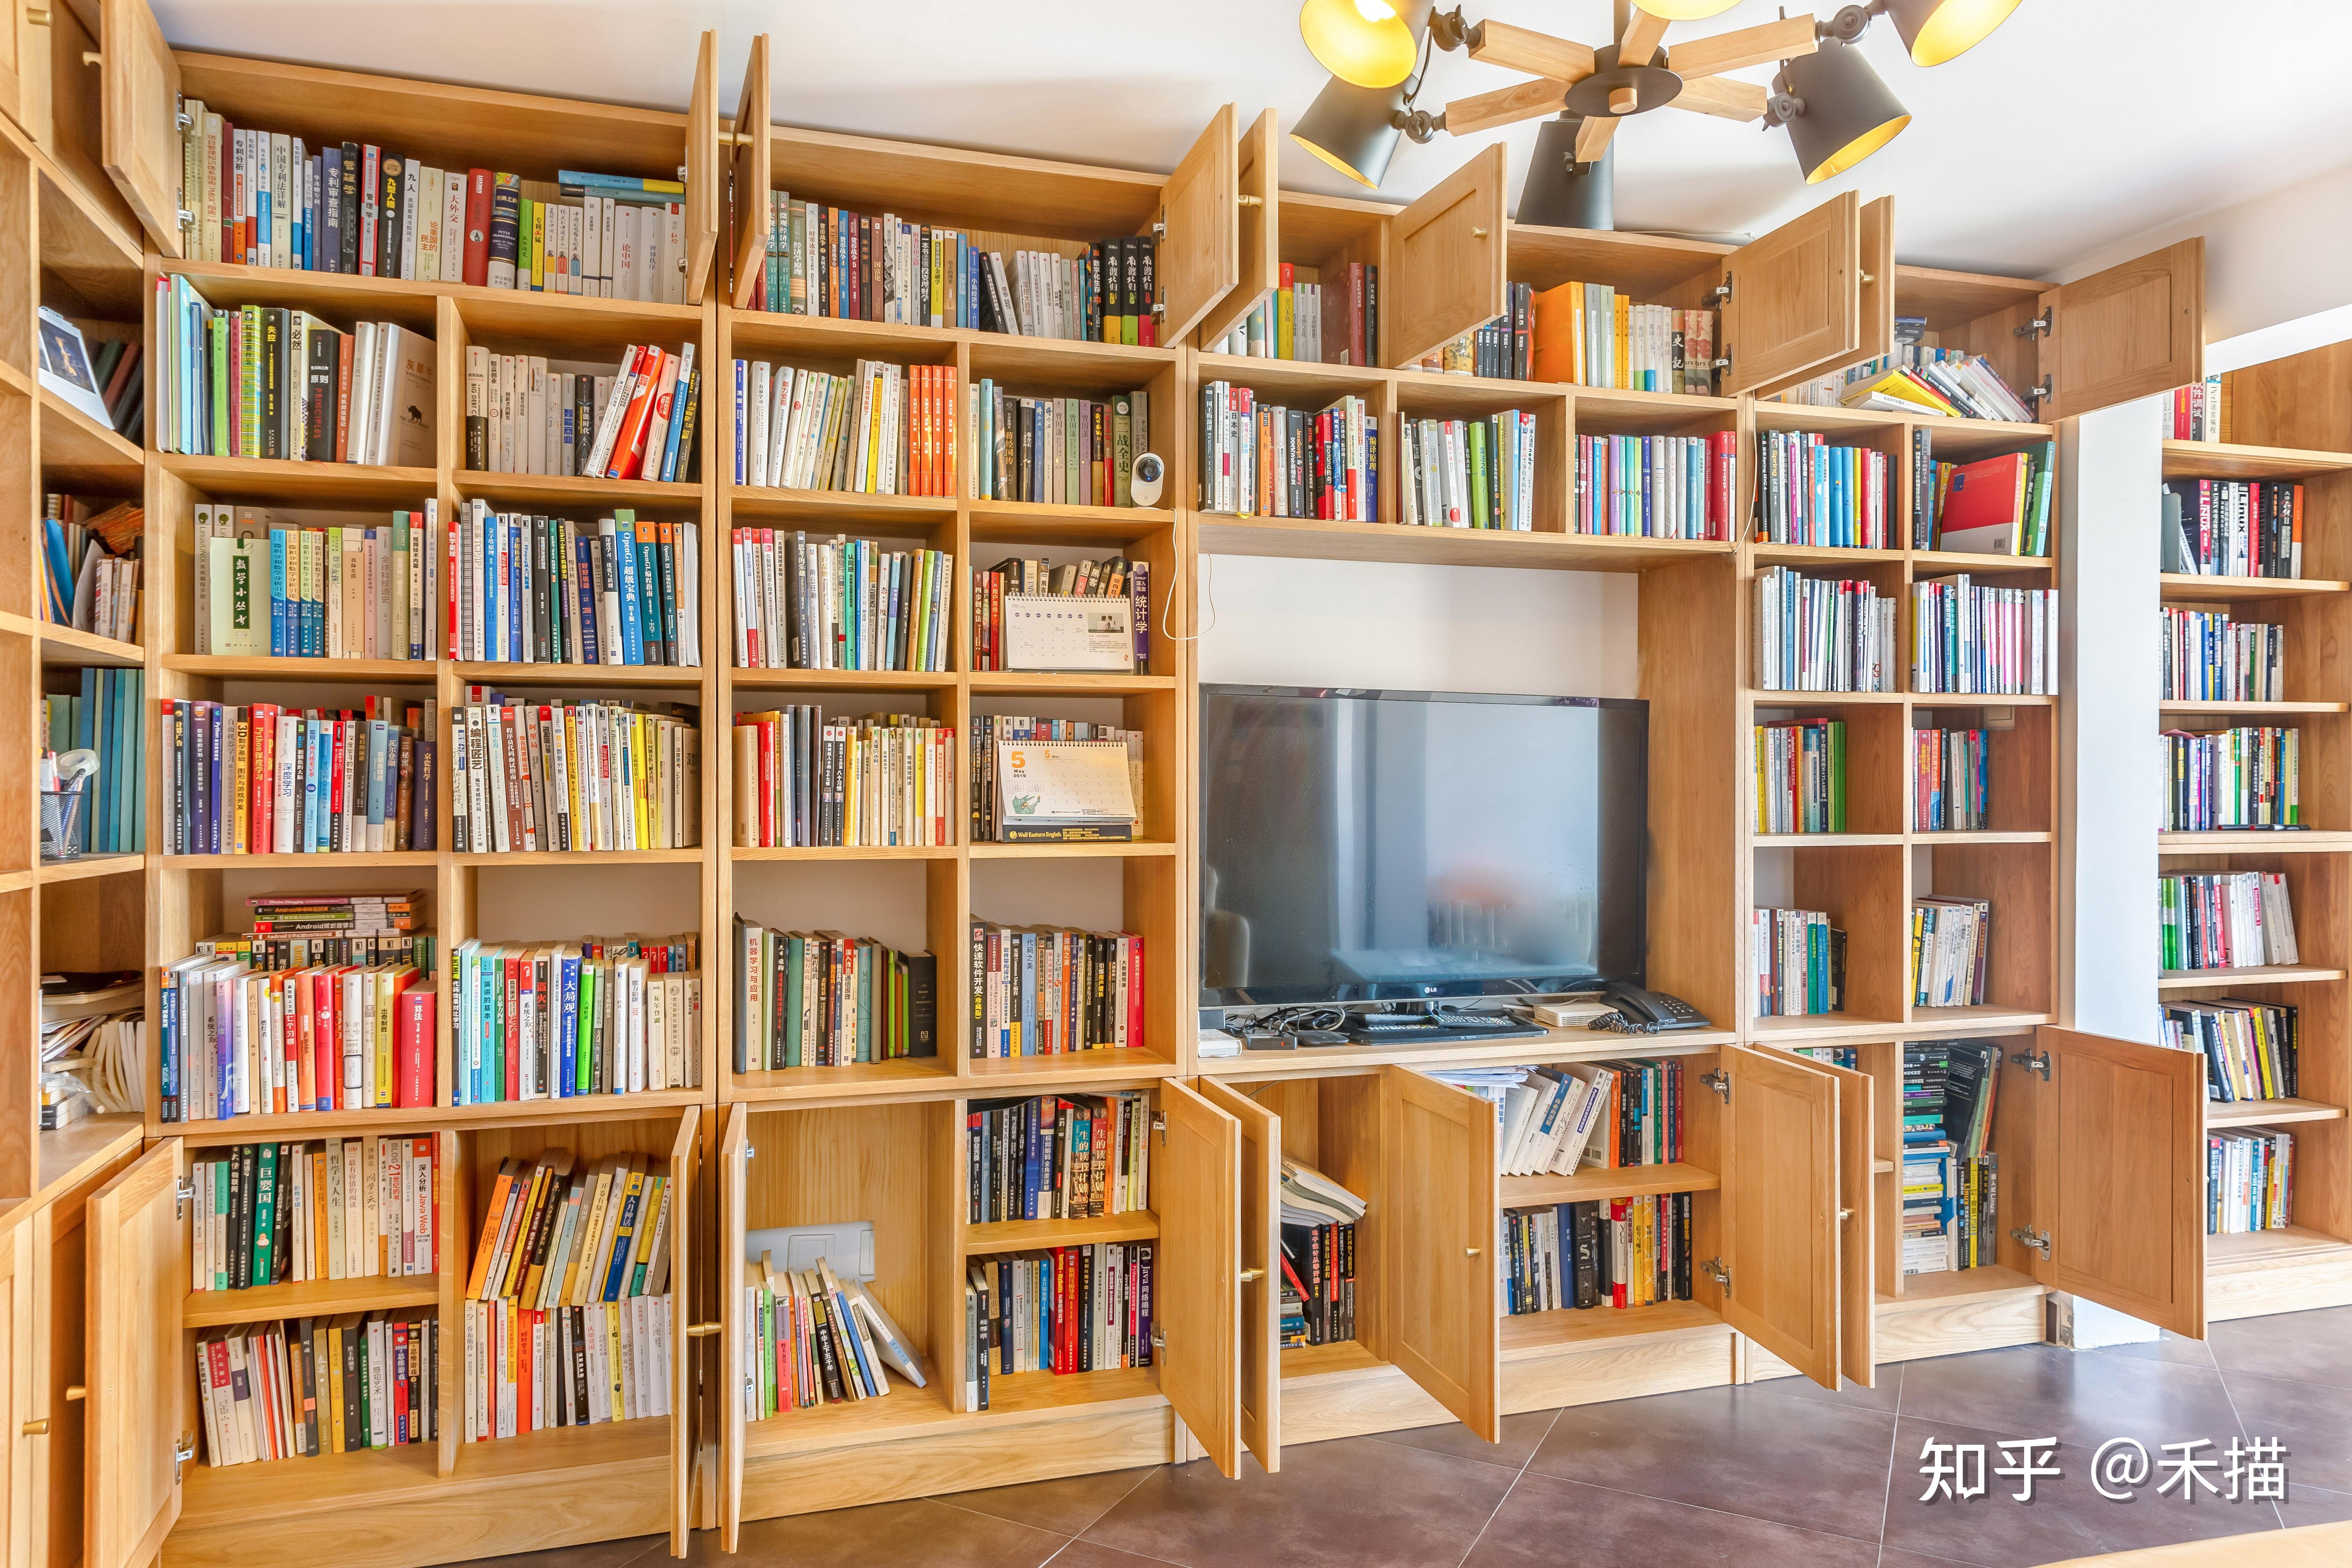 家里想弄一面书柜墙,有哪些建议? 